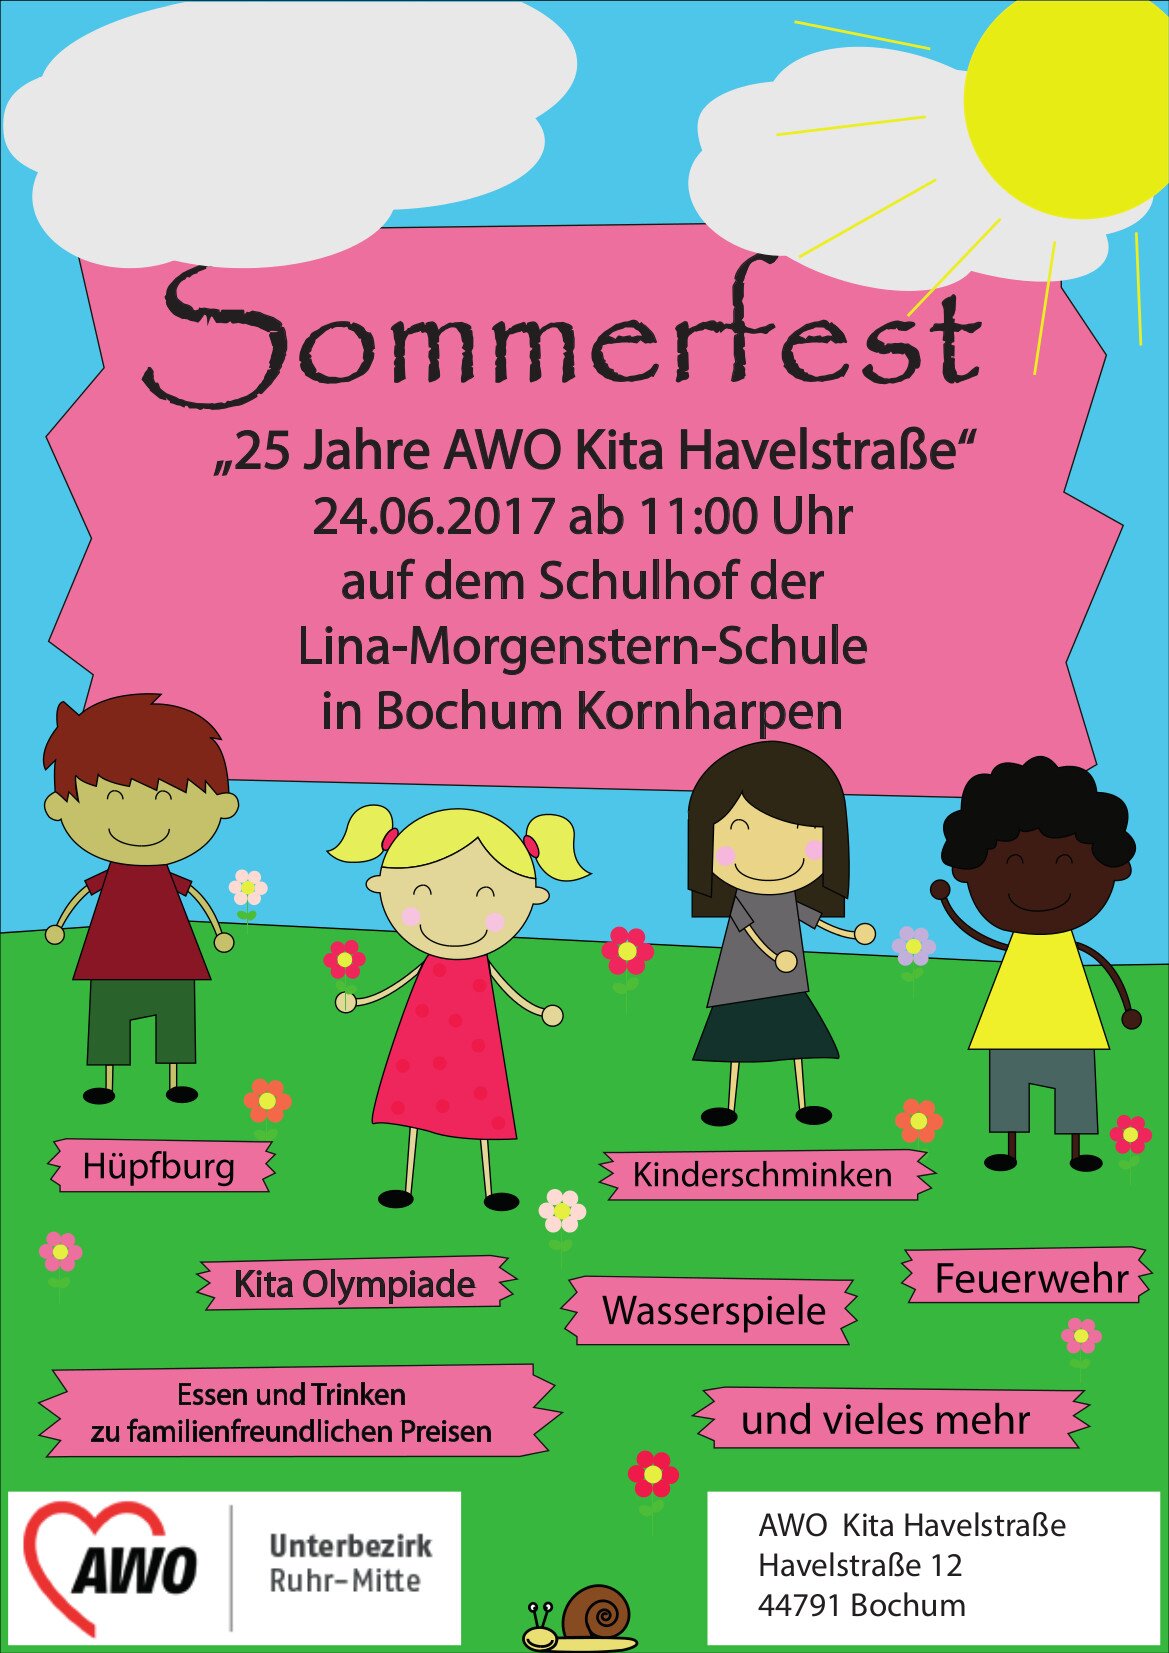 Plakat: Sommerfest und Jubiläum Kita Havelstraße - 25 Jahre. Plakative Zeichnung von Kindern auf einer Blumenwiese